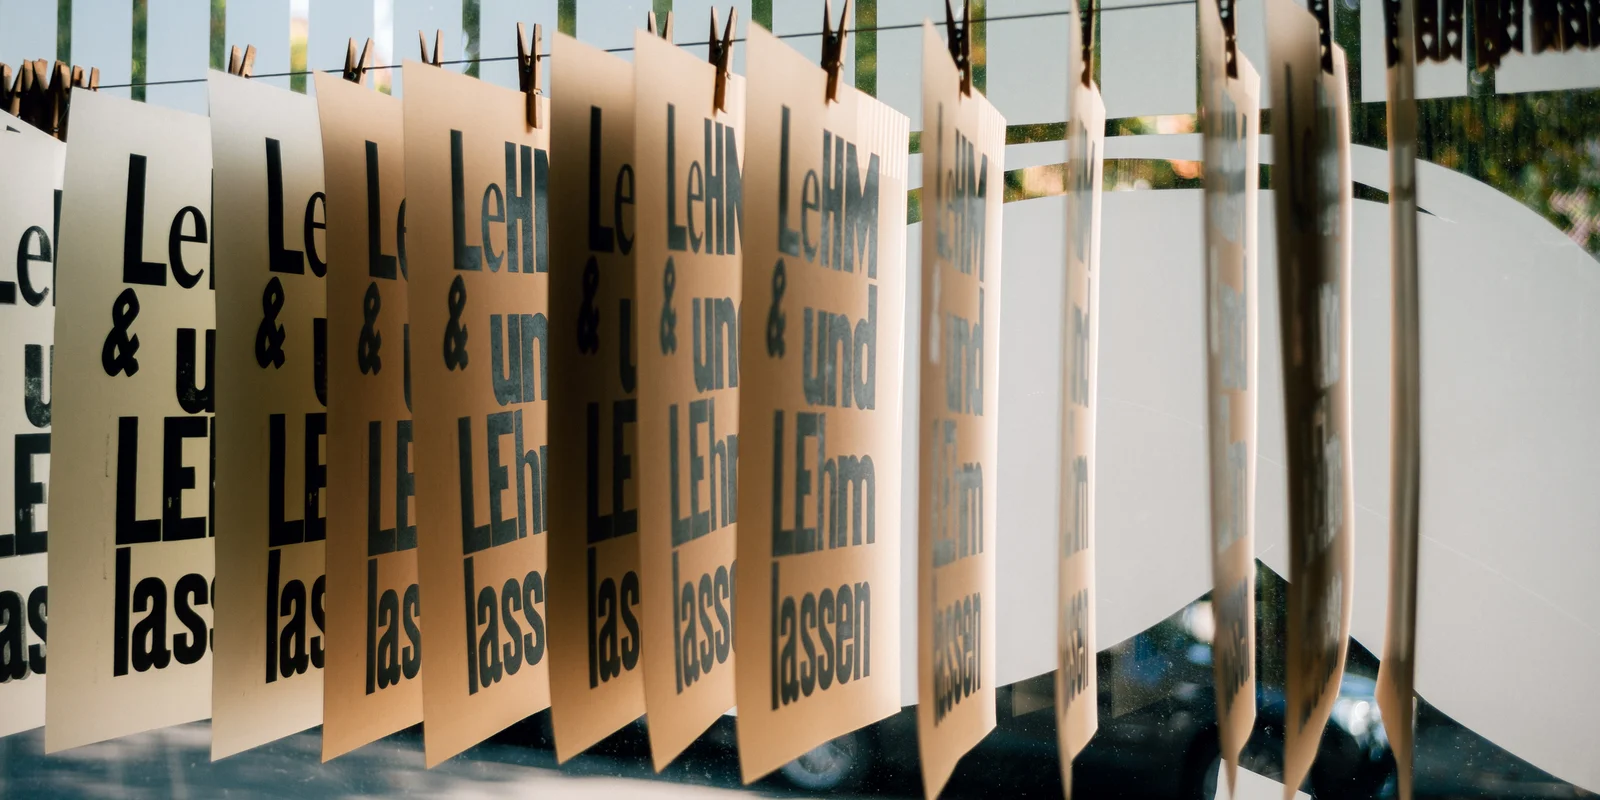 An einer Leine trocknen mehrere gedruckte Postkarten mit der Aufschrift "LeHM und LEhm lassen"